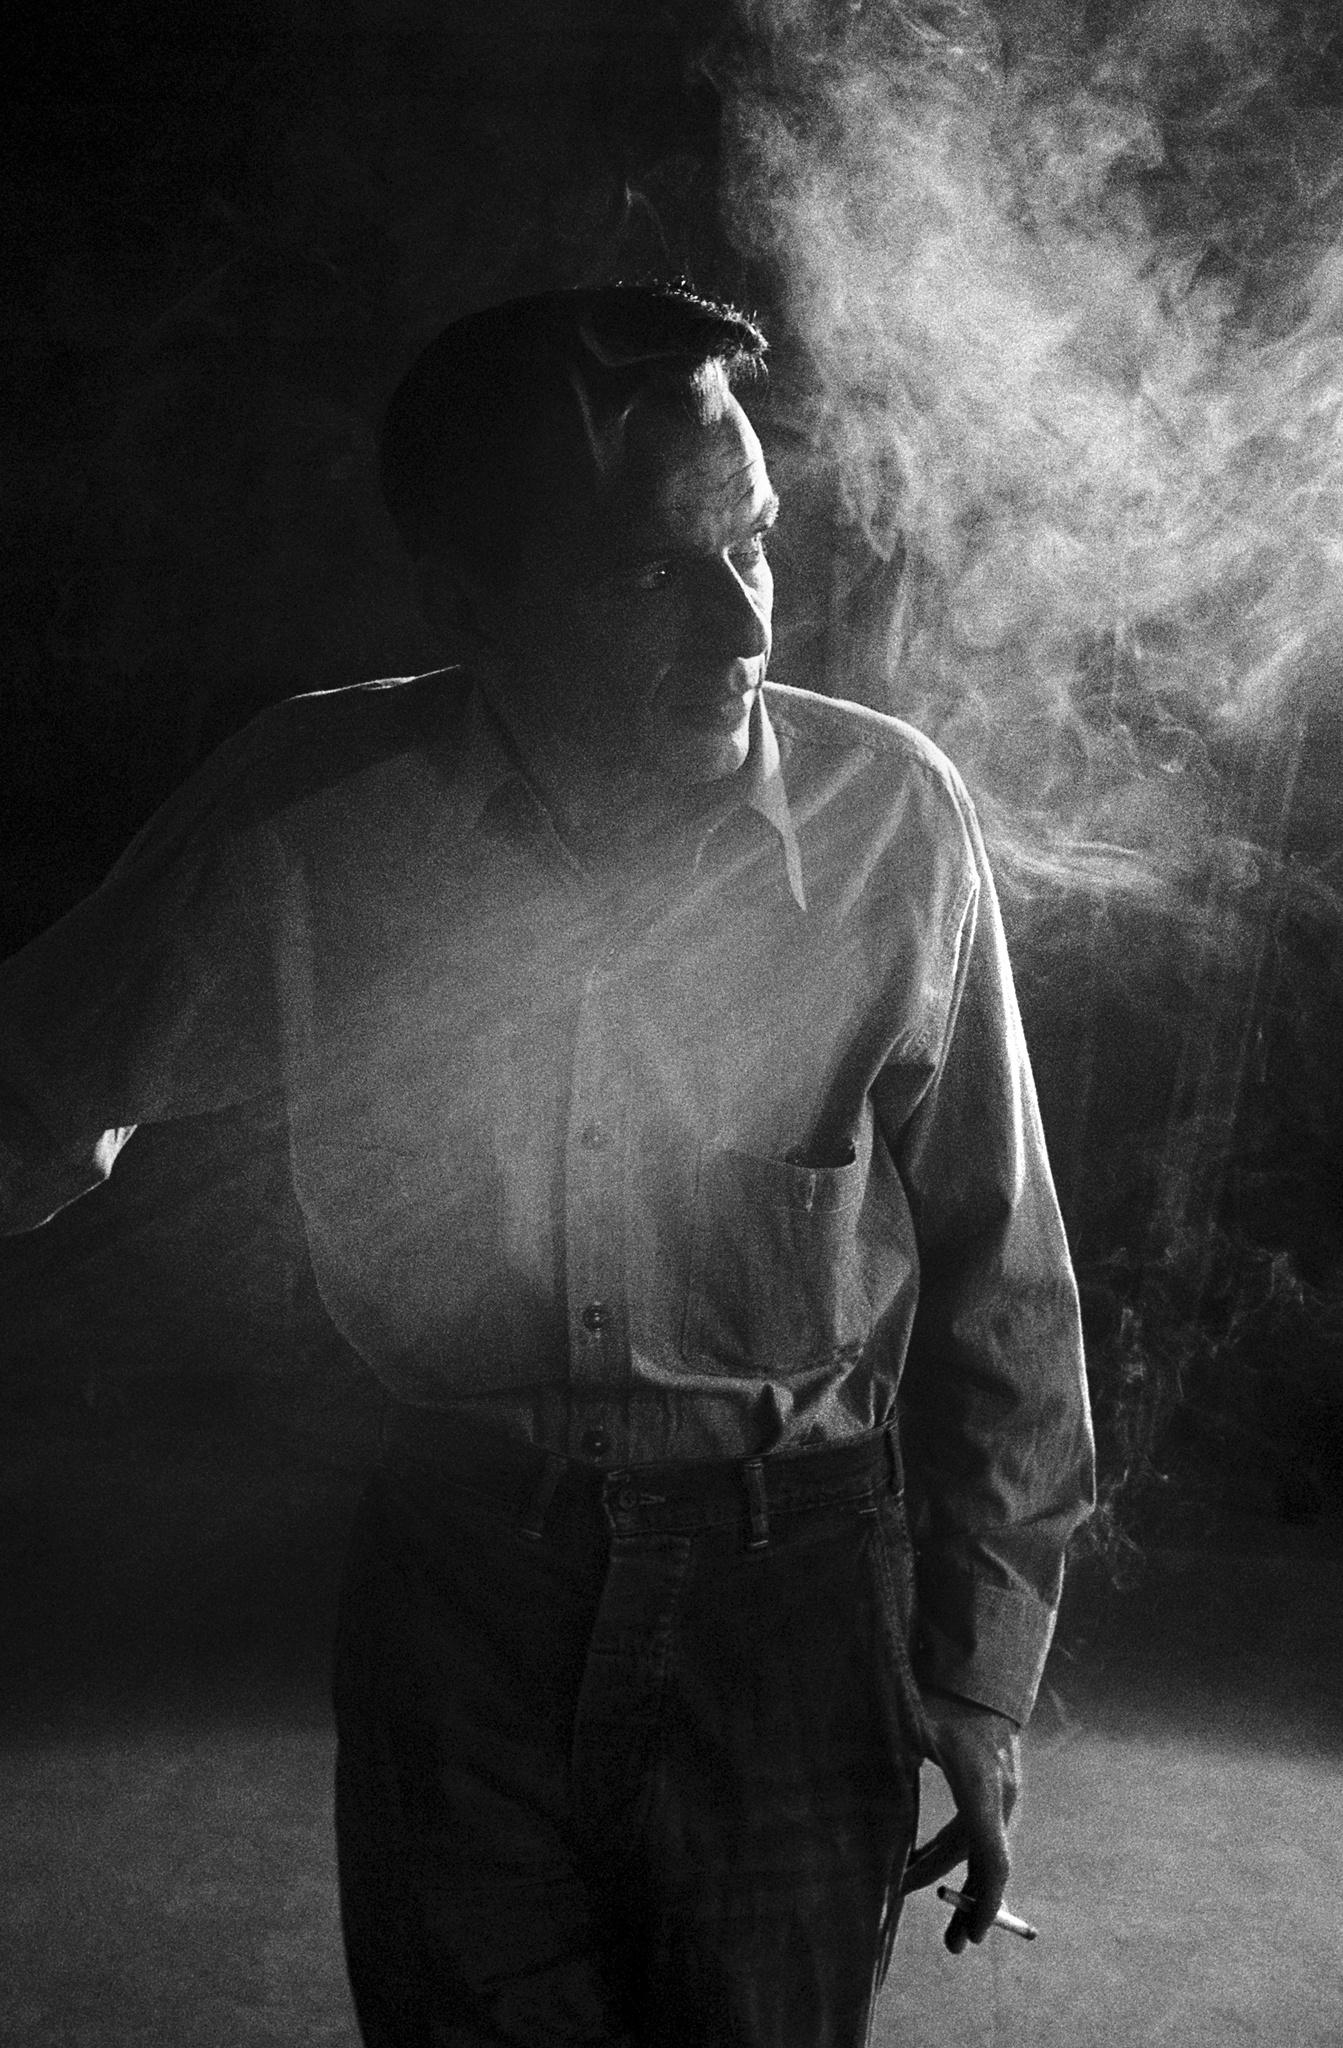 Frank Sinatra, 1955 - Bob Willoughby (photo de portrait)
Expédition possible dans le monde entier
Signé par Christopher Willoughby, exécuteur testamentaire, portant le titre et les informations relatives au droit d'auteur du photographe, numéroté et